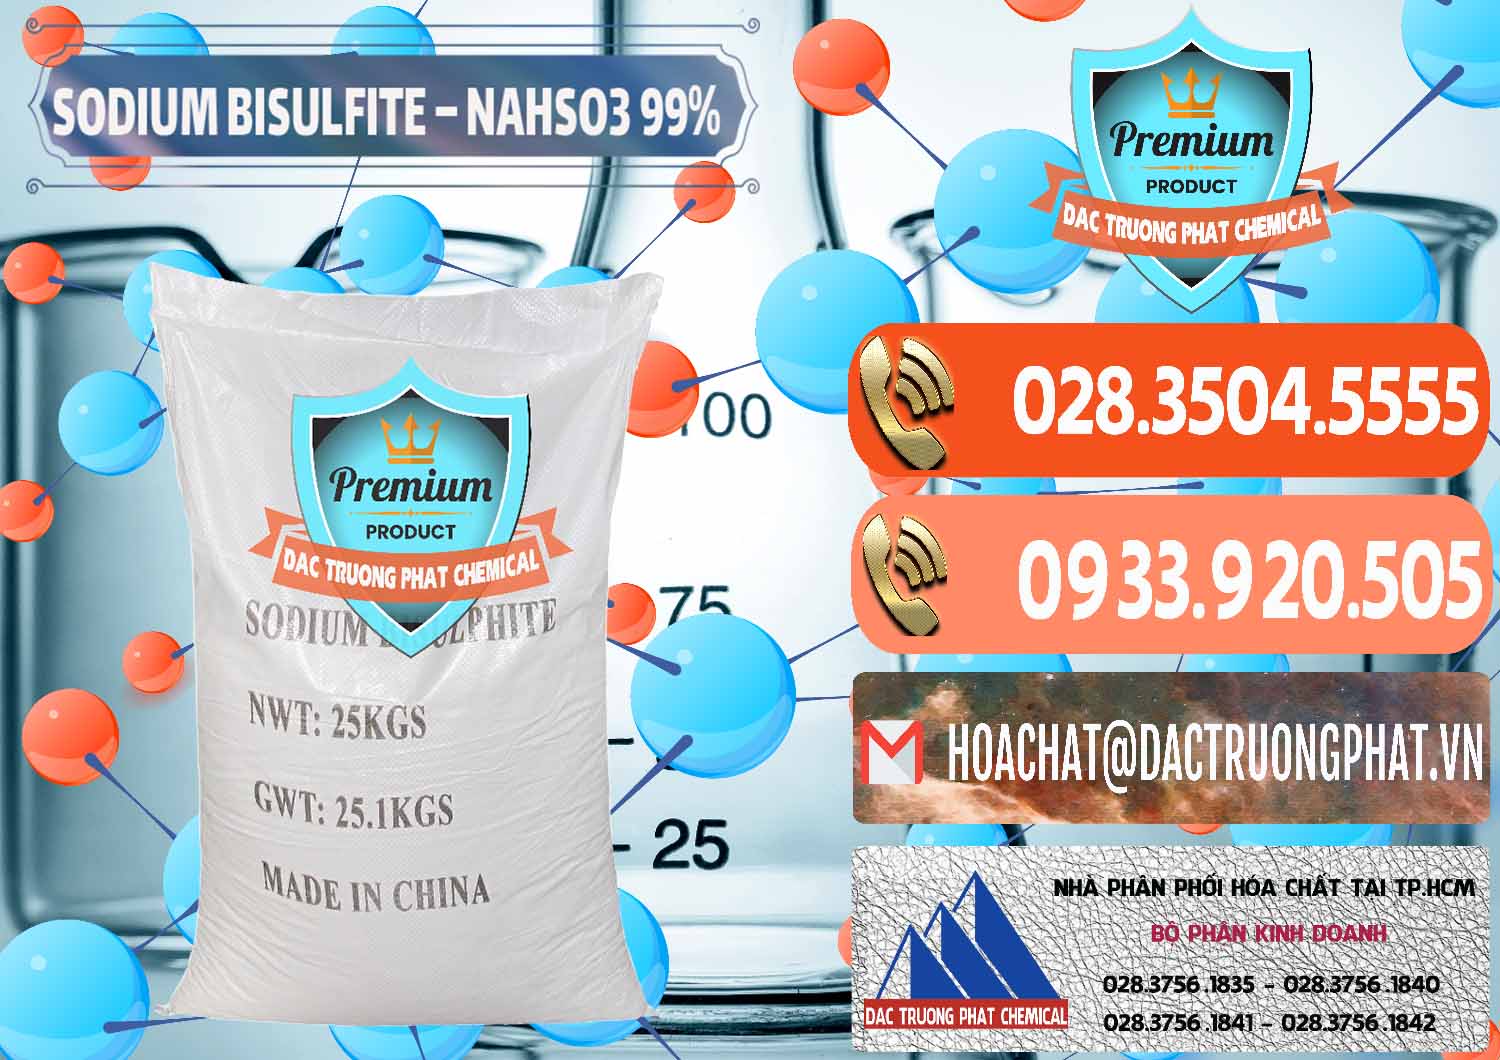 Cty chuyên kinh doanh _ bán Sodium Bisulfite – NAHSO3 Trung Quốc China - 0140 - Cty bán - cung cấp hóa chất tại TP.HCM - hoachatmientay.com